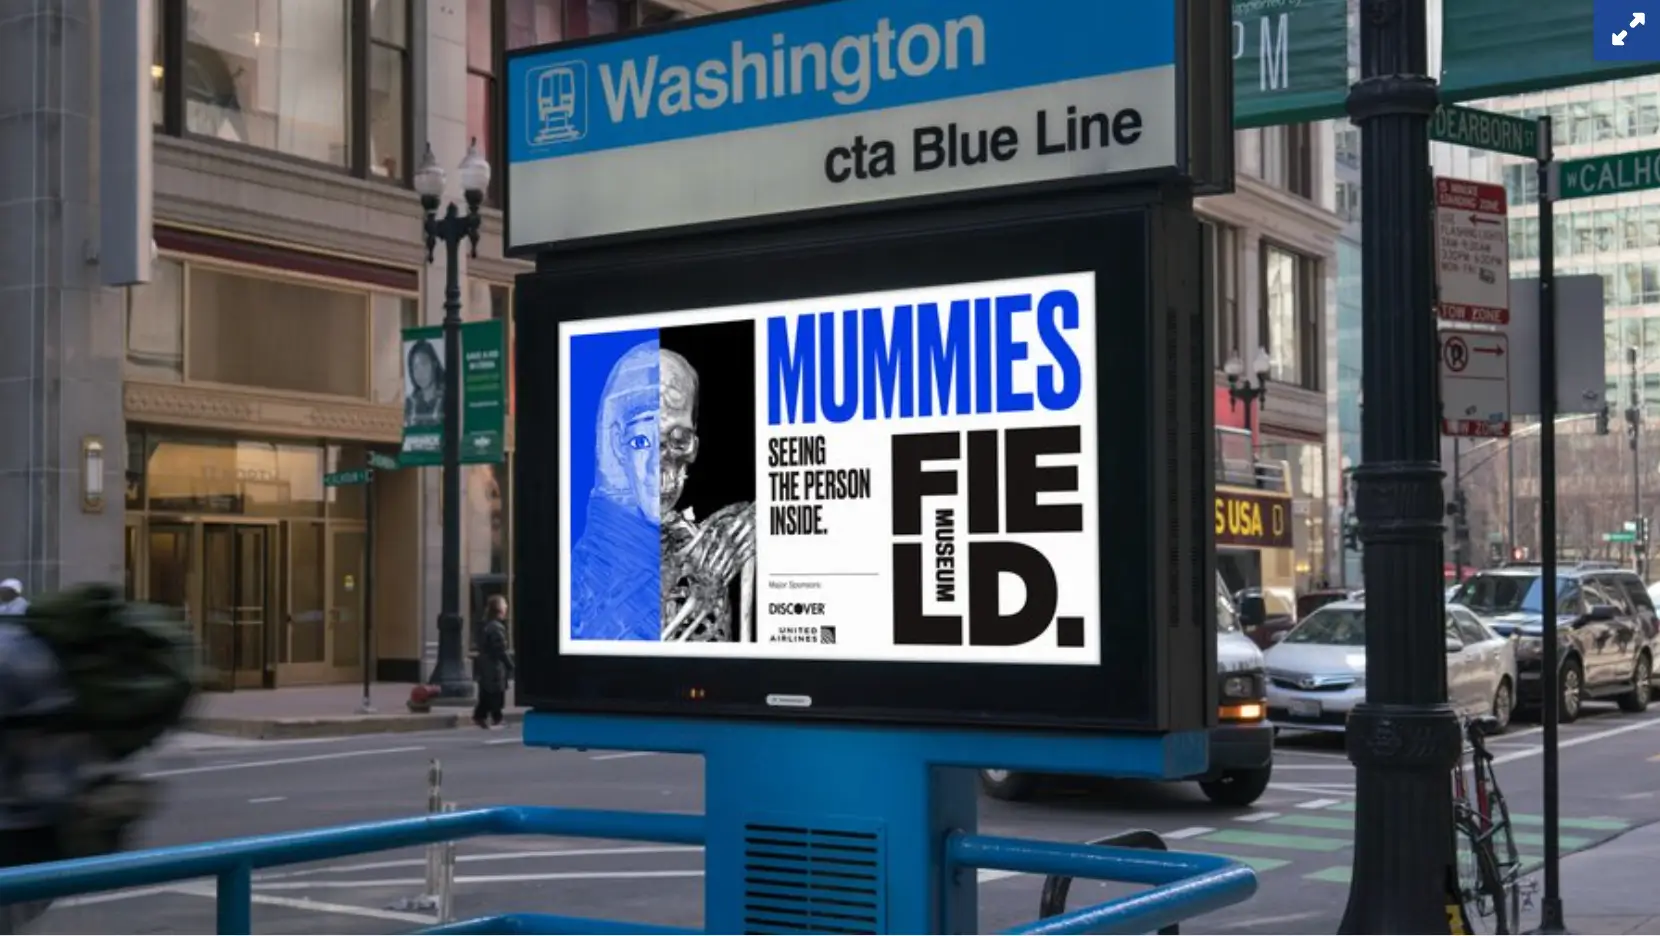 此图显示了芝加哥菲尔德博物馆 2018 年木乃伊展览的宣传活动，将传统广告与社交媒体内容相结合，以激发兴趣并吸引游客参观博物馆。